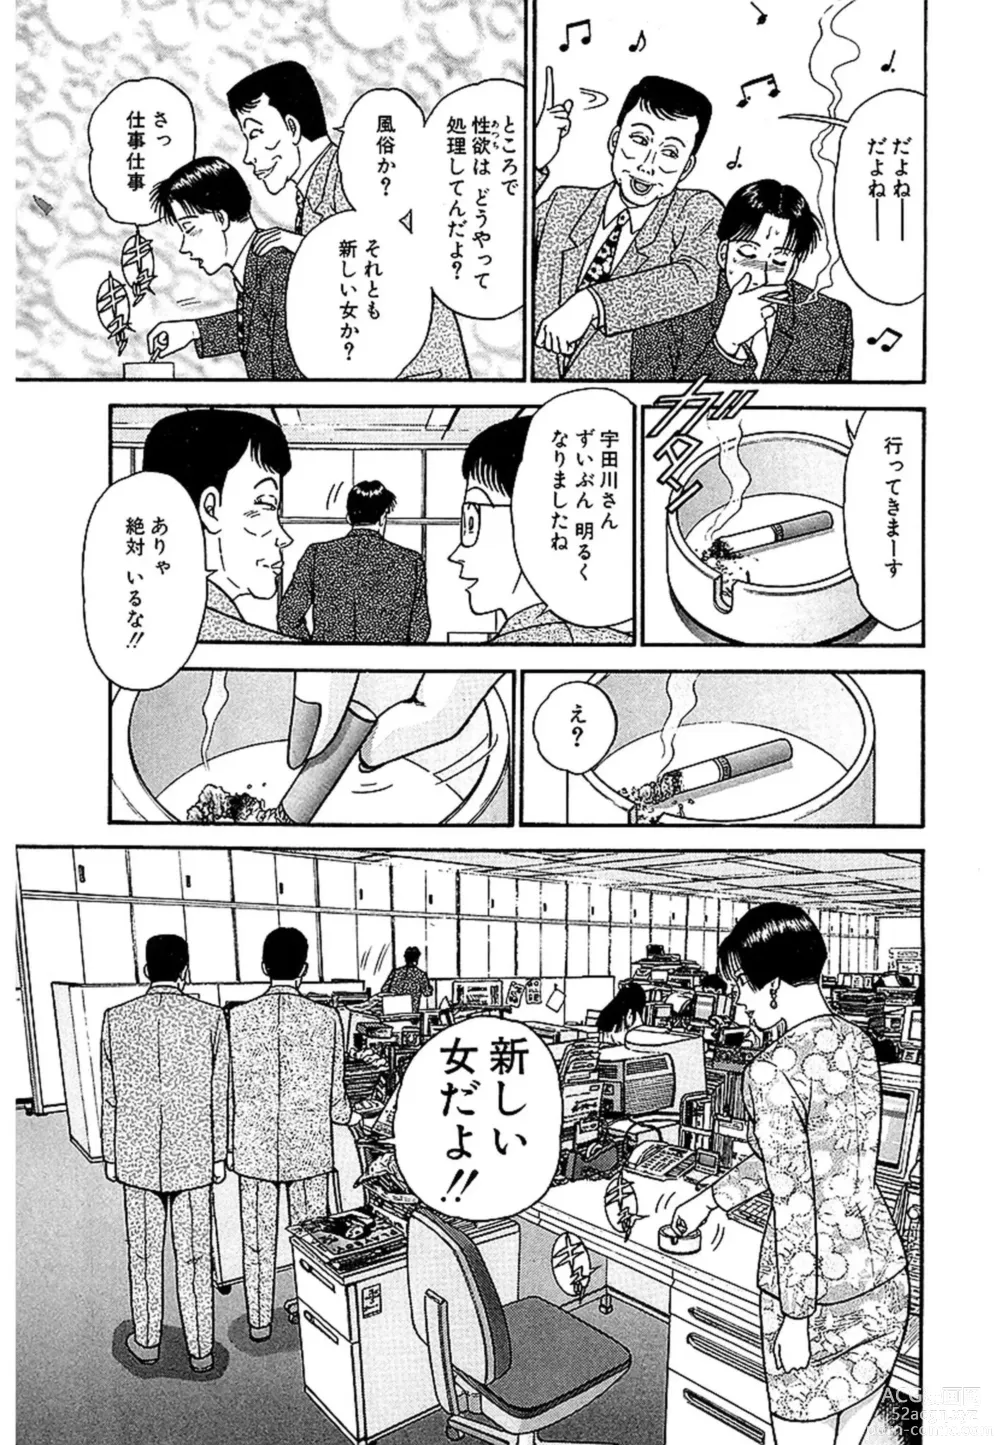 Page 10 of manga Women － Wimen － Shinsōban 1